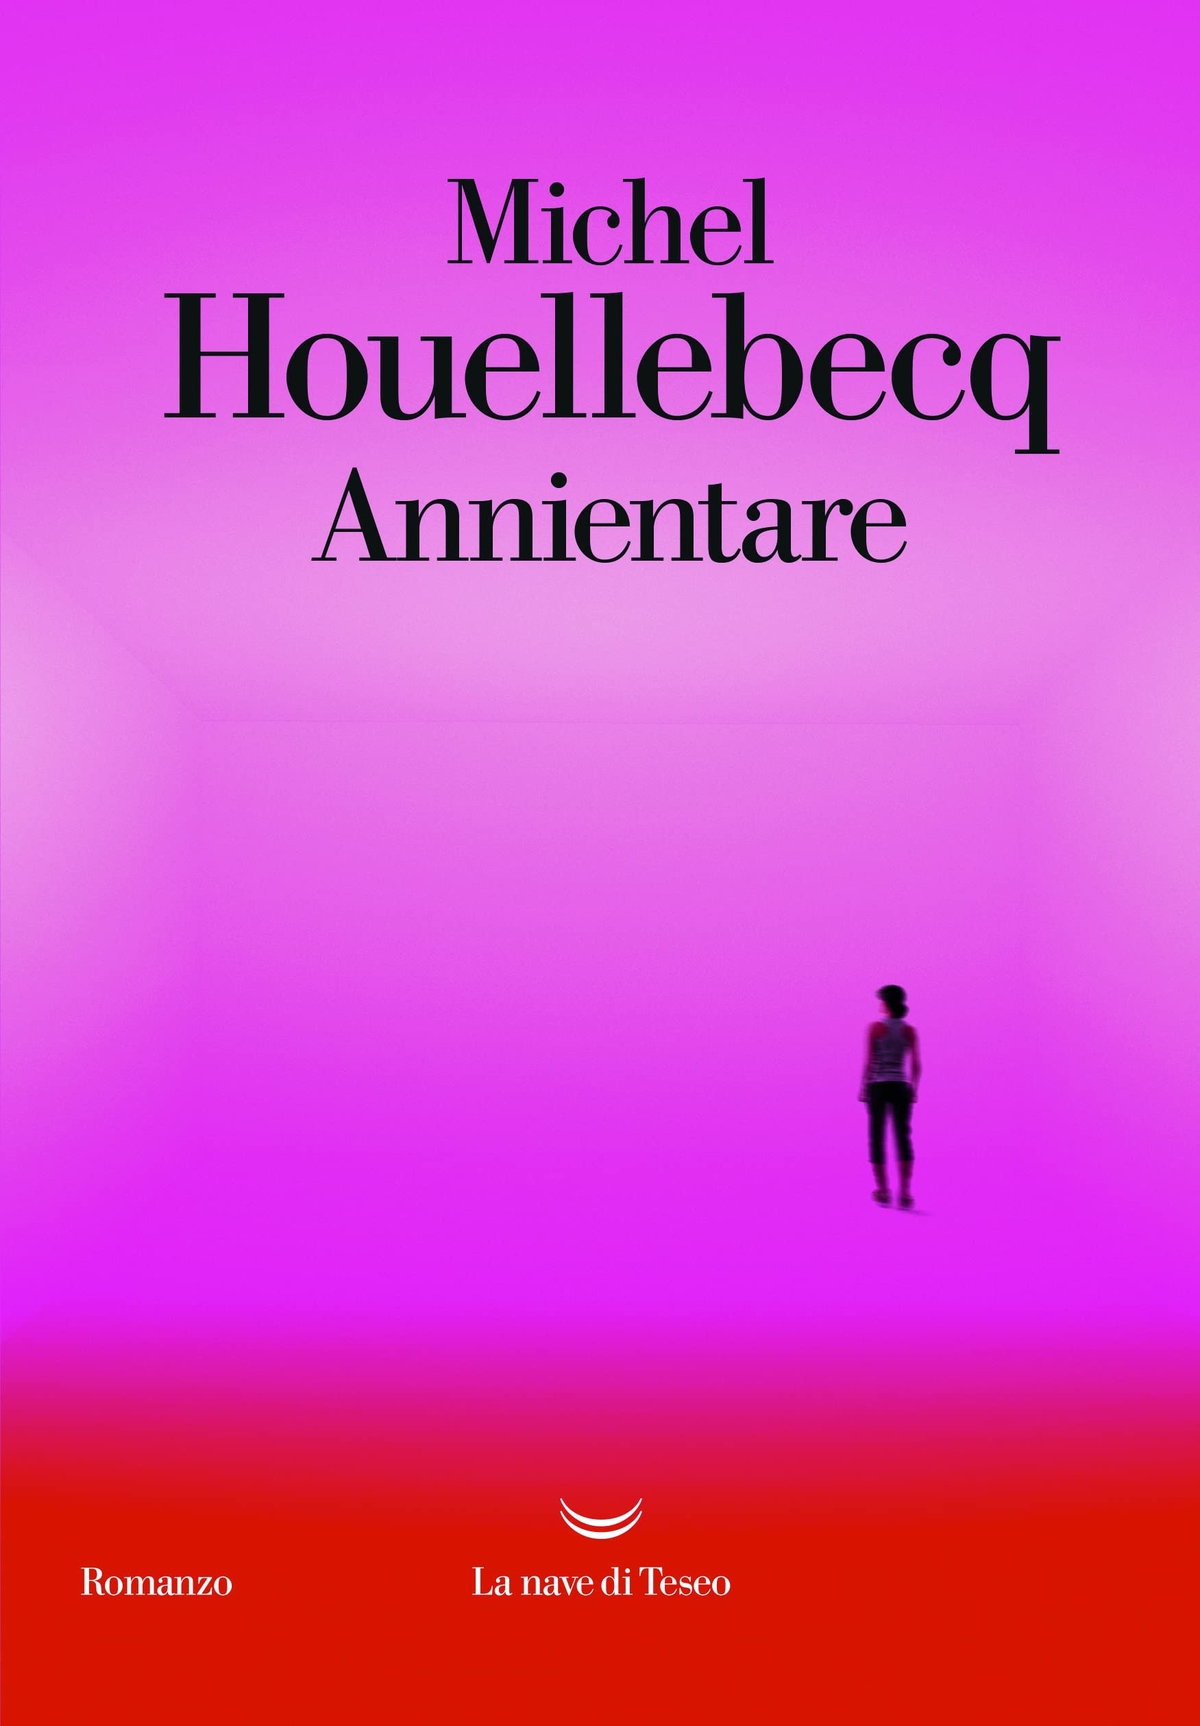 Michel Houellebecq – Annientare (La nave di Teseo, Milano 2022)